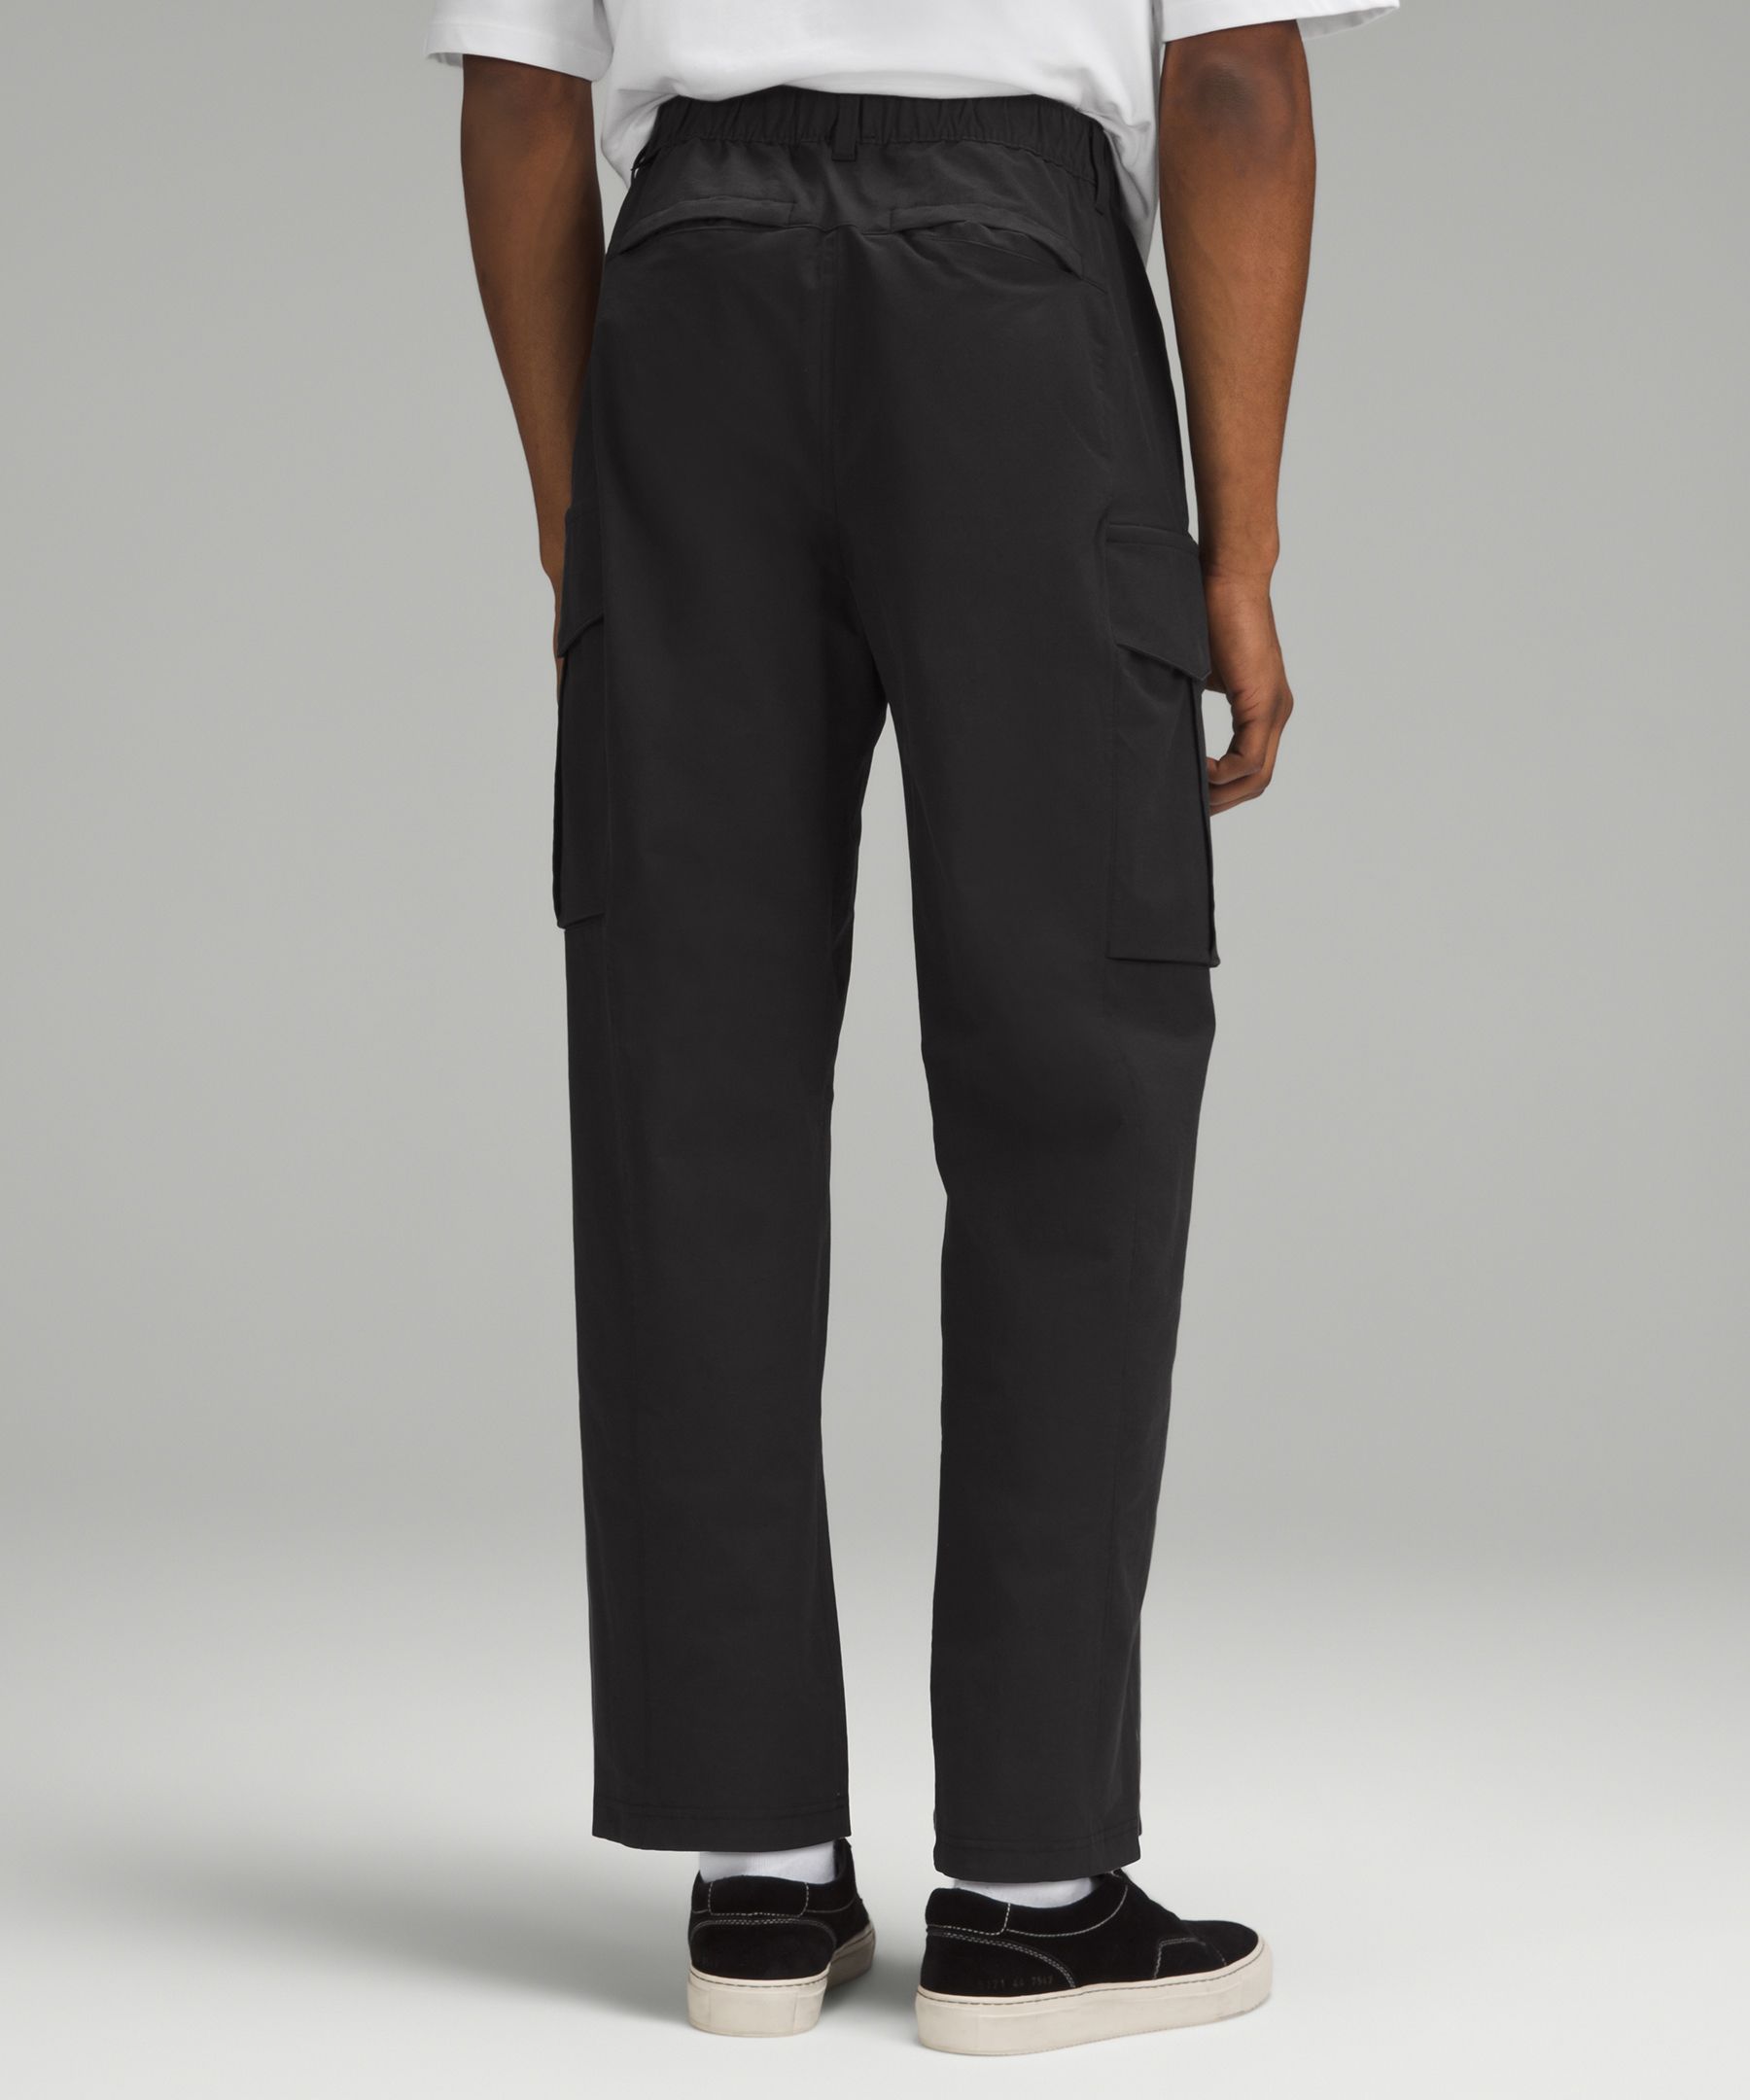 ABC Slim-Fit Trouser 34L *Stretch Cotton VersaTwill, Men's Trousers